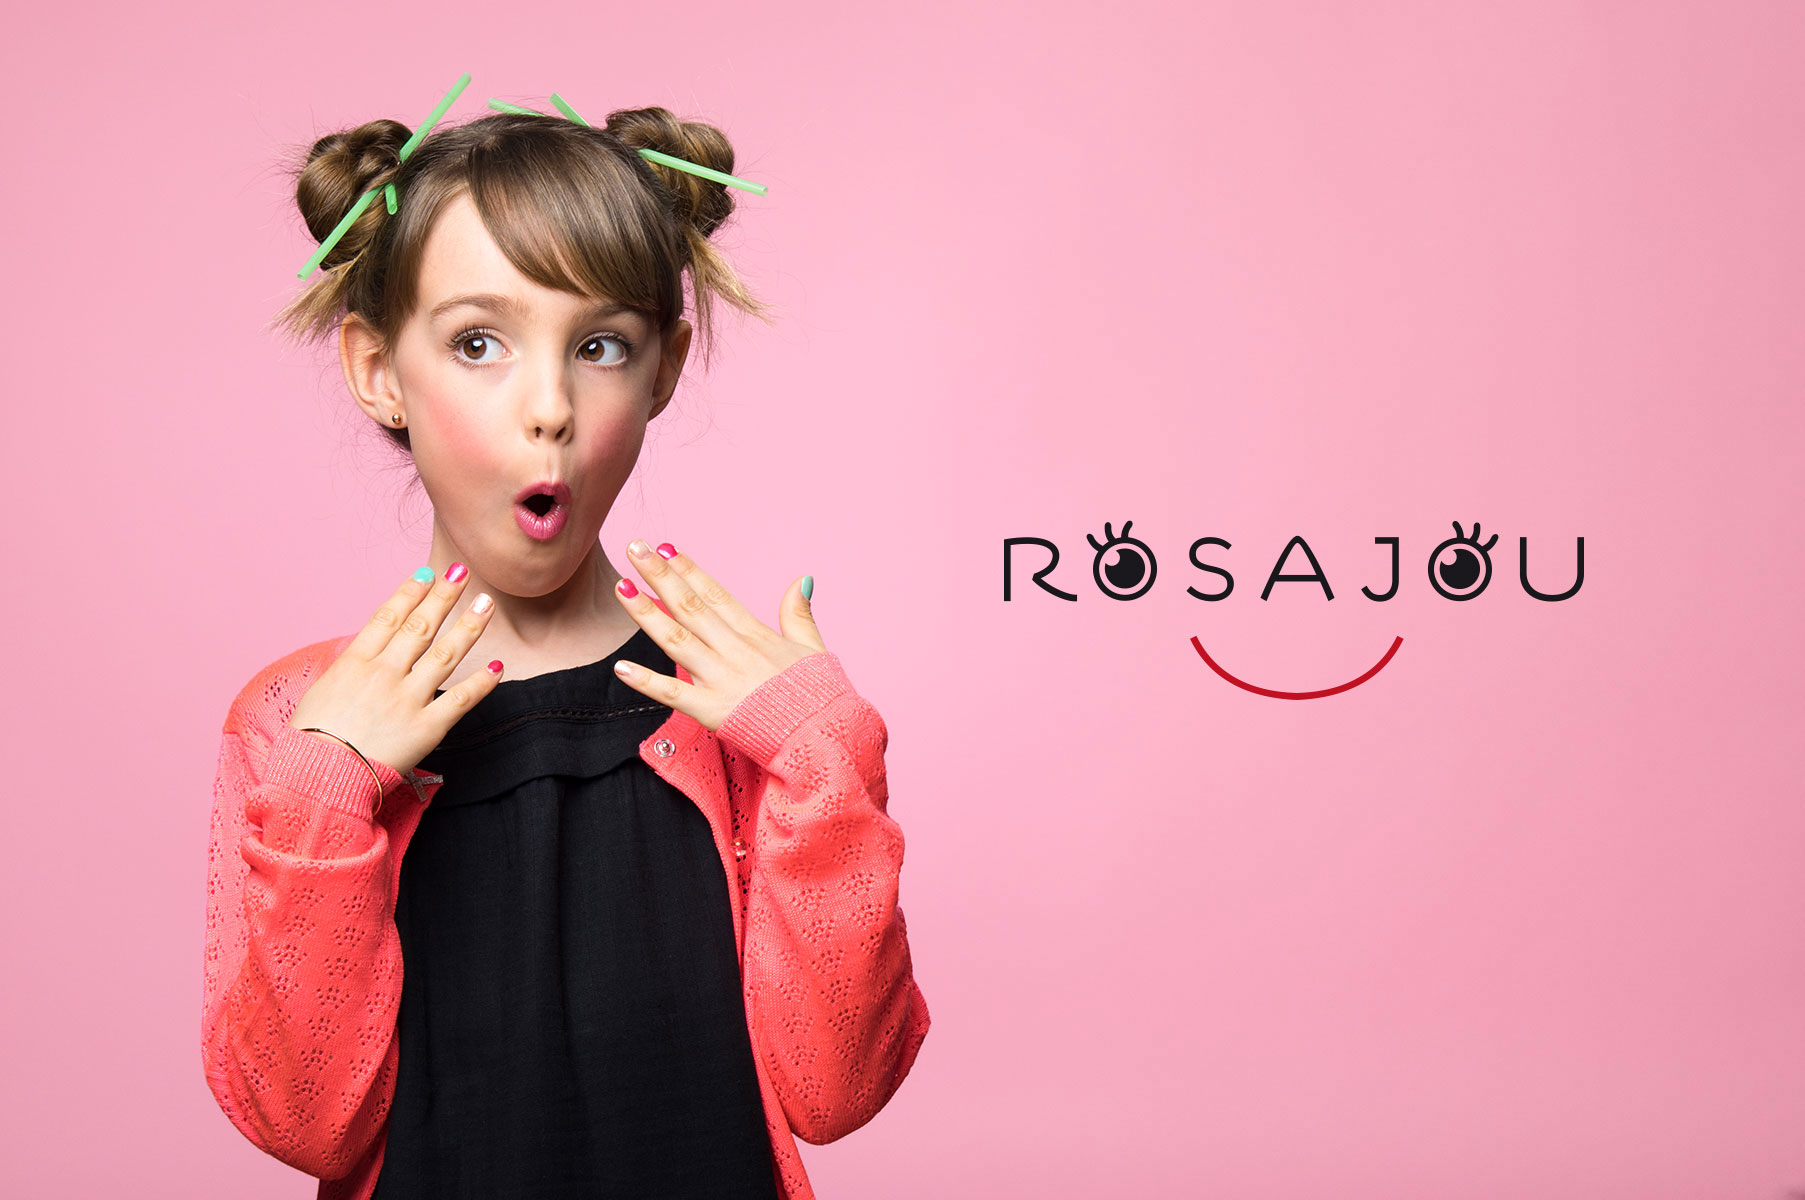 rosajou, marque de maquillage pour petites filles